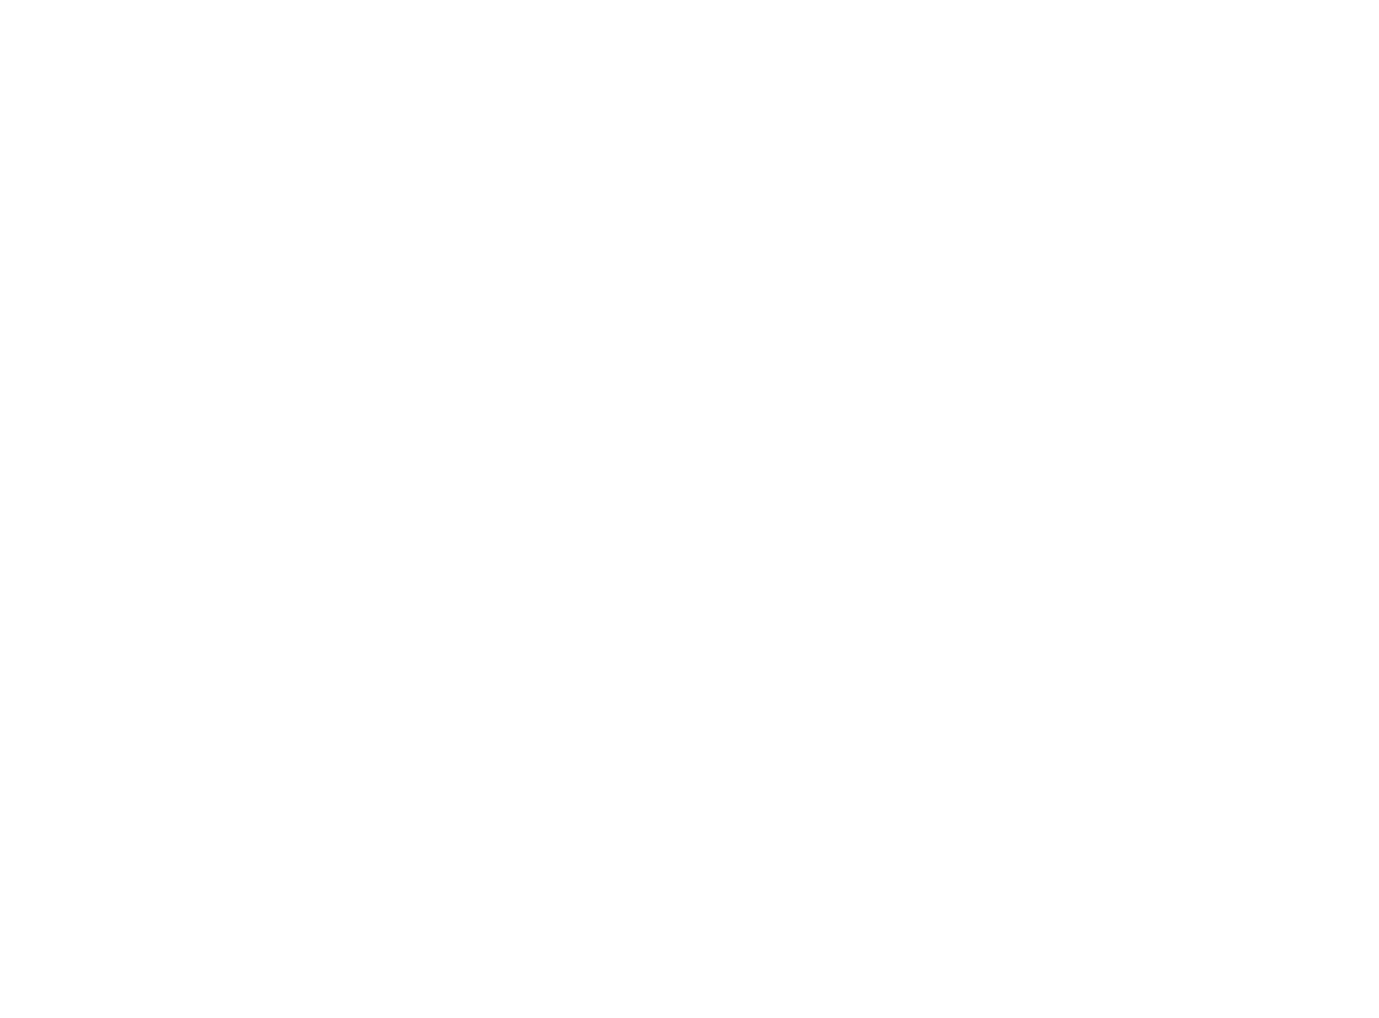 FHI360